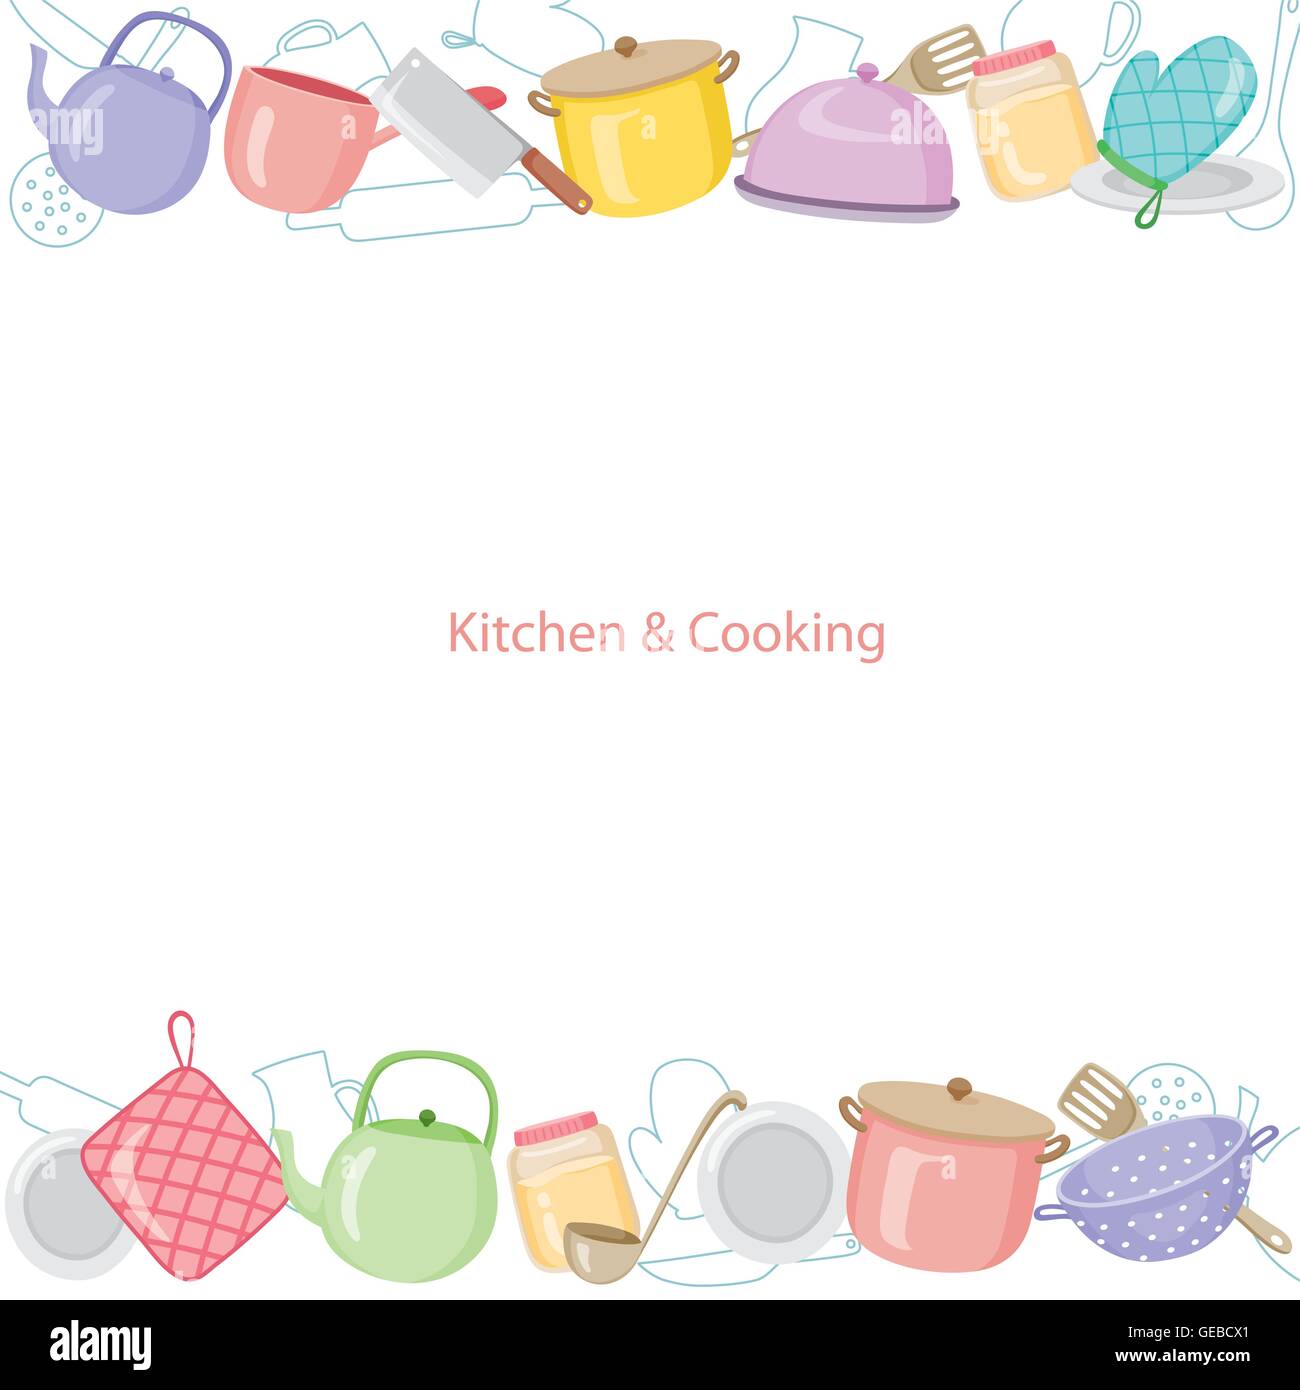 Küche Ausstattung Hintergrund, Geschirr, Geschirr, Kochen, Lebensmittel, Bäckerei, Lifestyle Stock Vektor